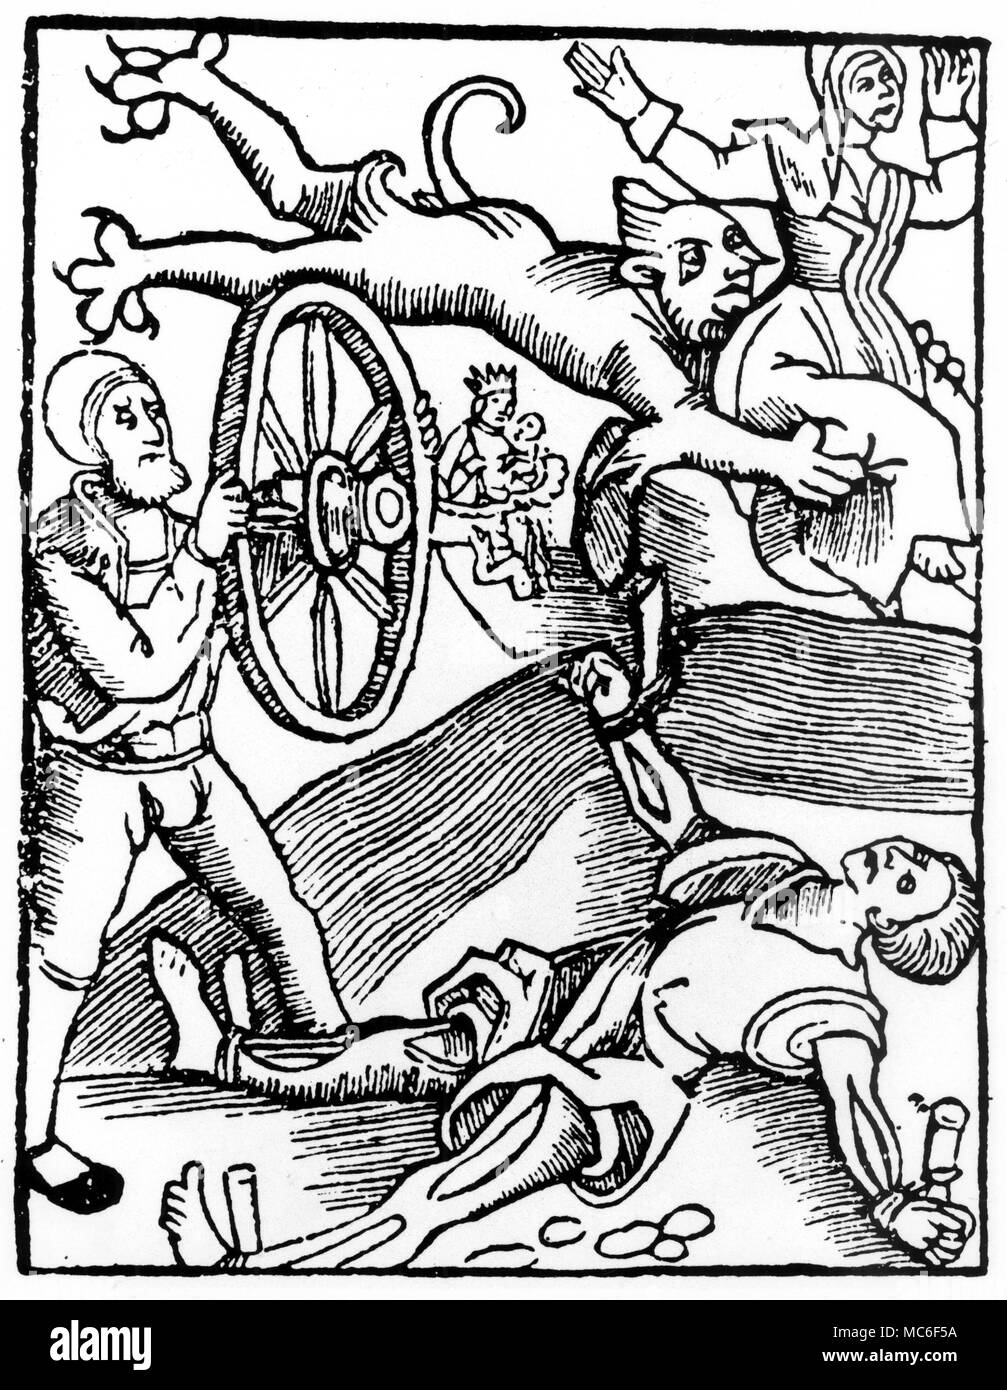 Der Teufel trägt die Seele einer Hexe, während ihr Komplize (warlock) durch das Rad gebrochen ist - die schrecklichste aller Strafen. Von einem deutschen Broschüre von 1517. Stockfoto